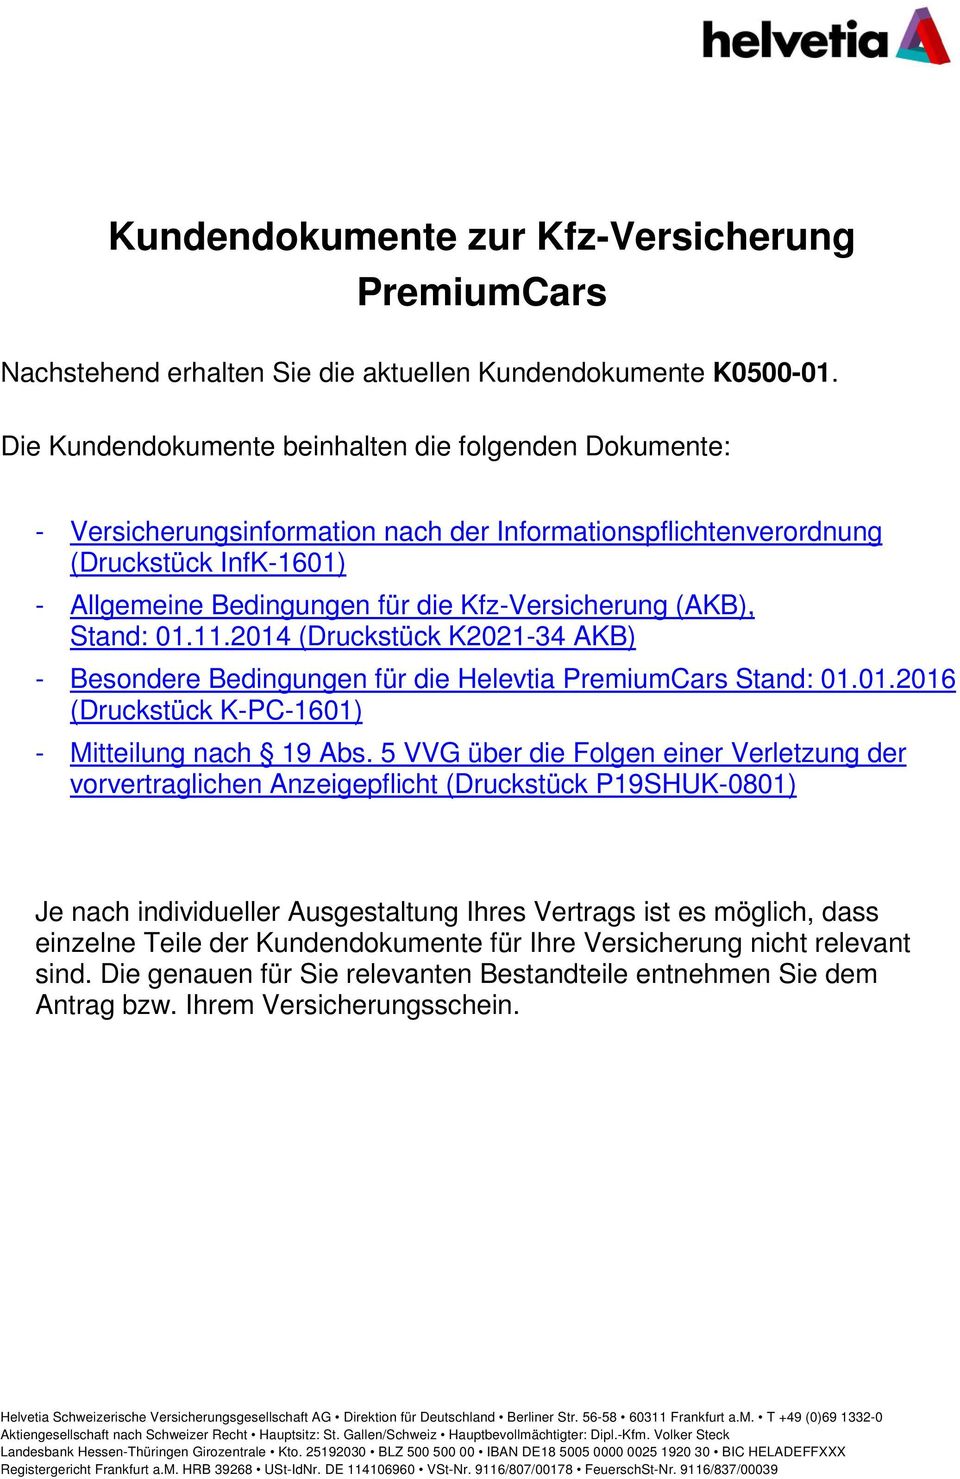 (AKB), Stand: 01.11.2014 (Druckstück K2021-34 AKB) - Besondere Bedingungen für die Helevtia PremiumCars Stand: 01.01.2016 (Druckstück K-PC-1601) - Mitteilung nach 19 Abs.